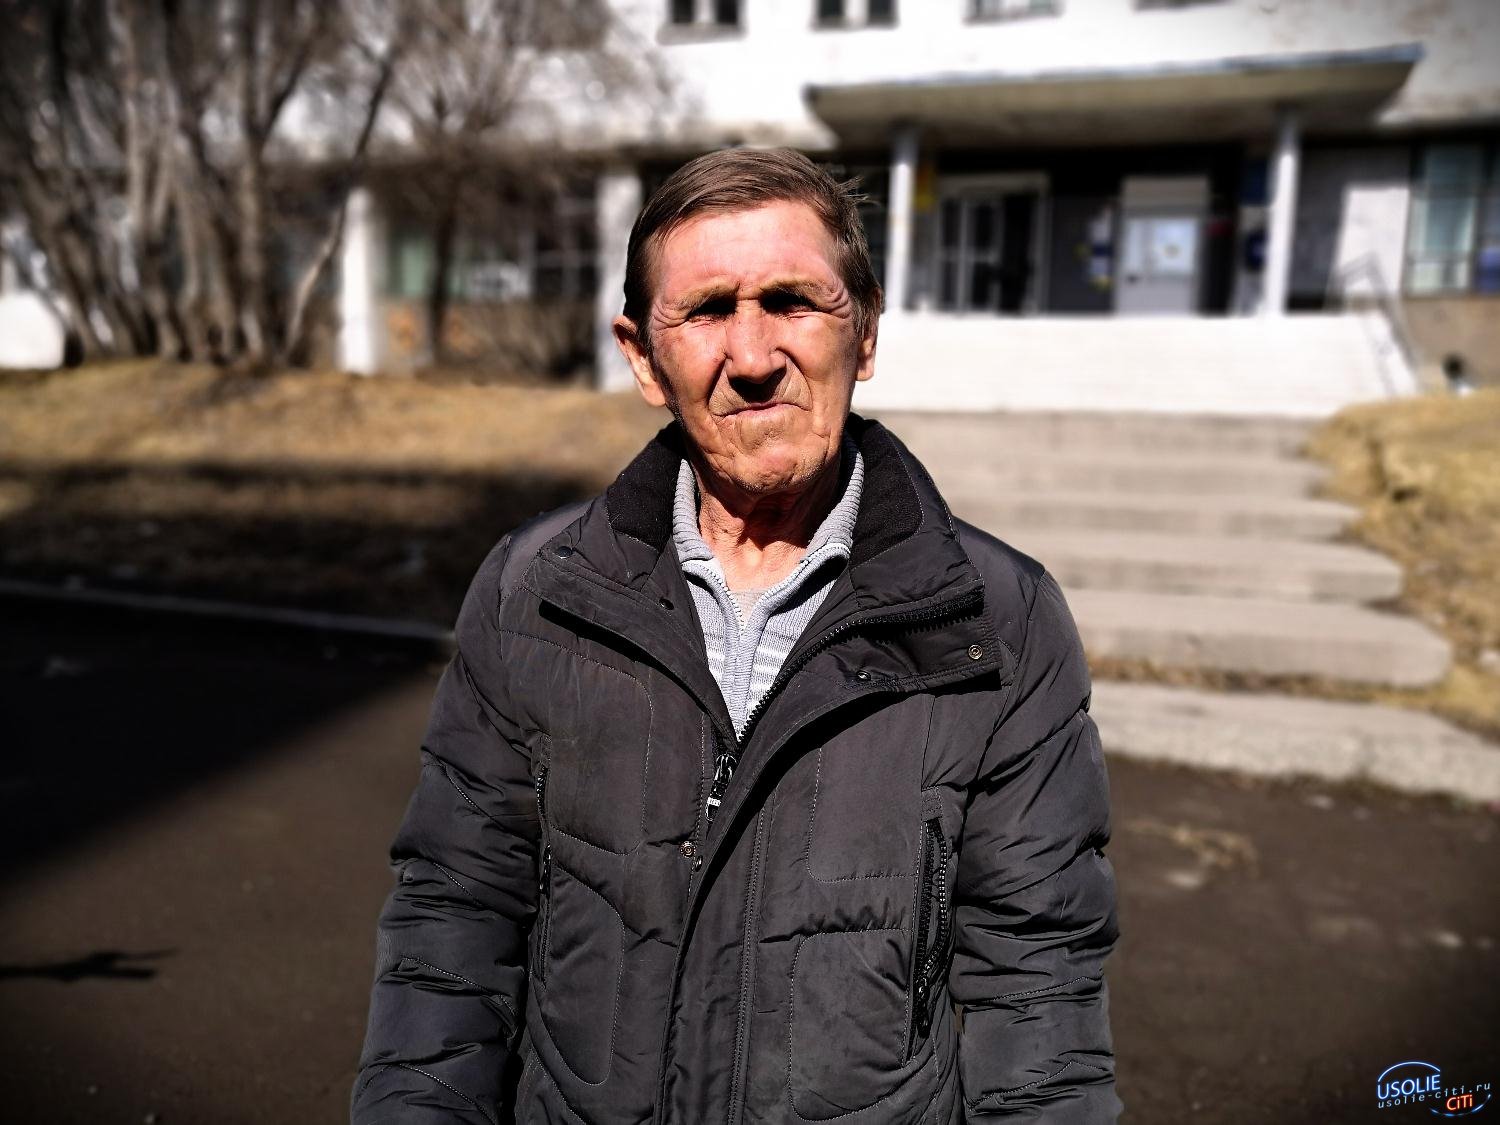 Внучка забрала документы: Пенсионер не может покинуть Усолье